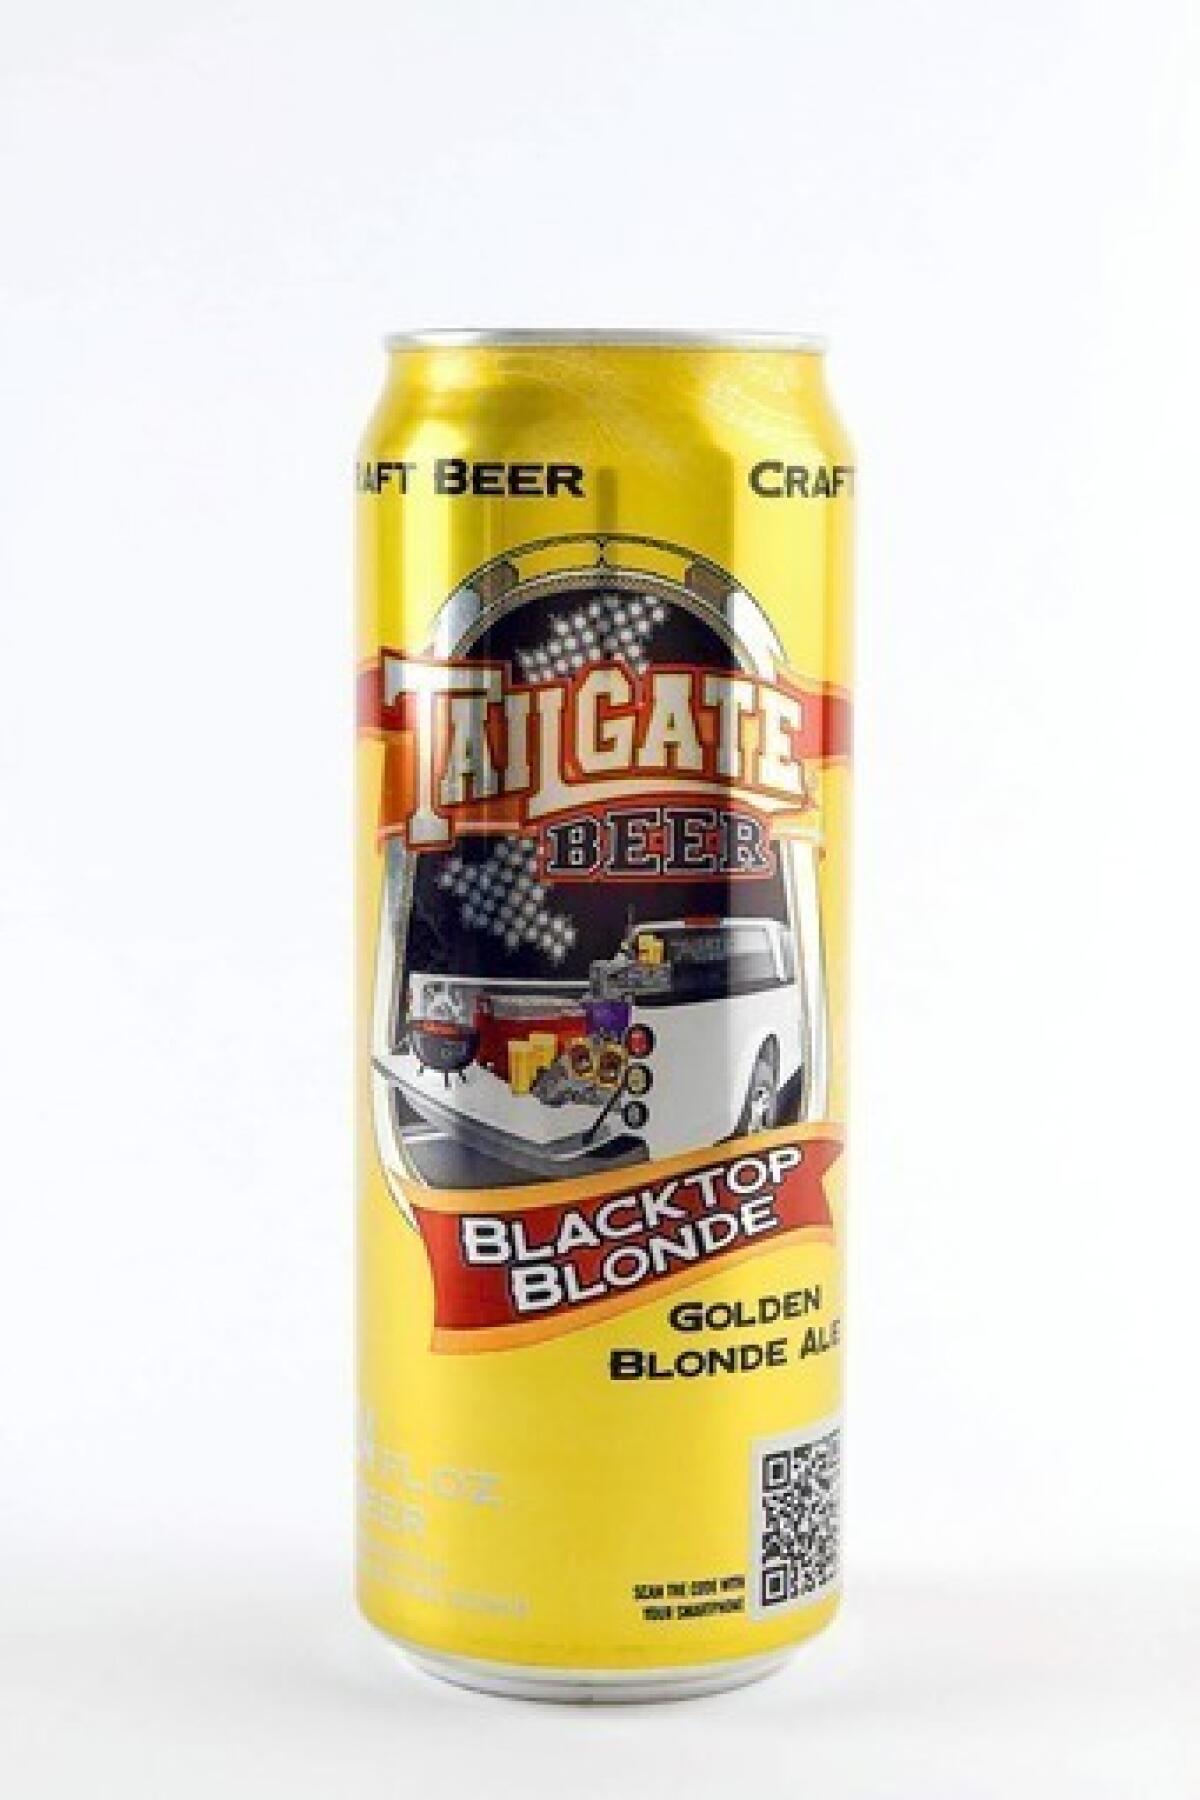 TailGate Beer's Blacktop Blonde